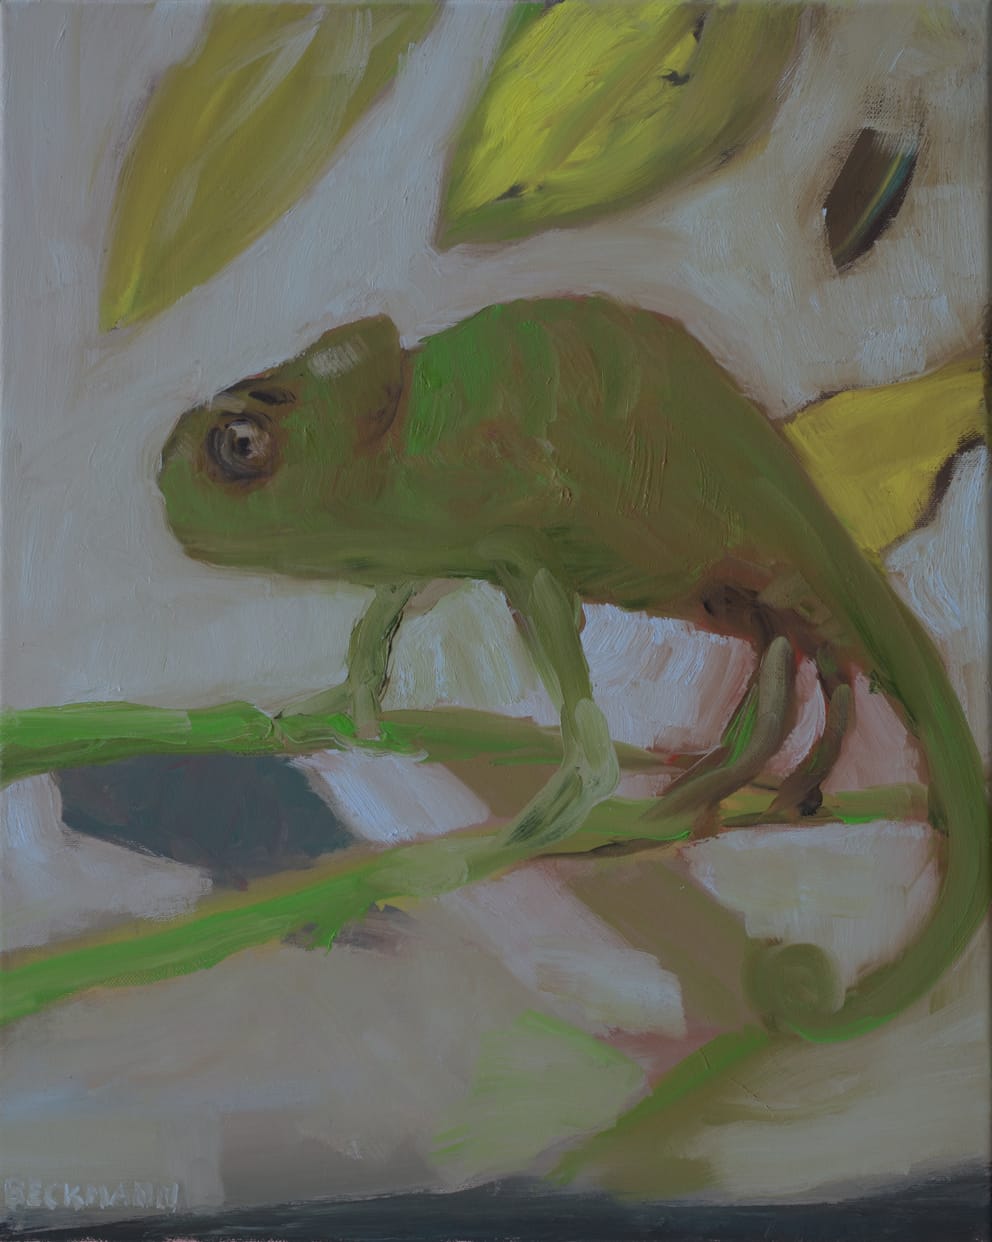 Sabine Beckmann, Chameleon in Lemontree, 50 x 40 cm, oil on linen, 2018